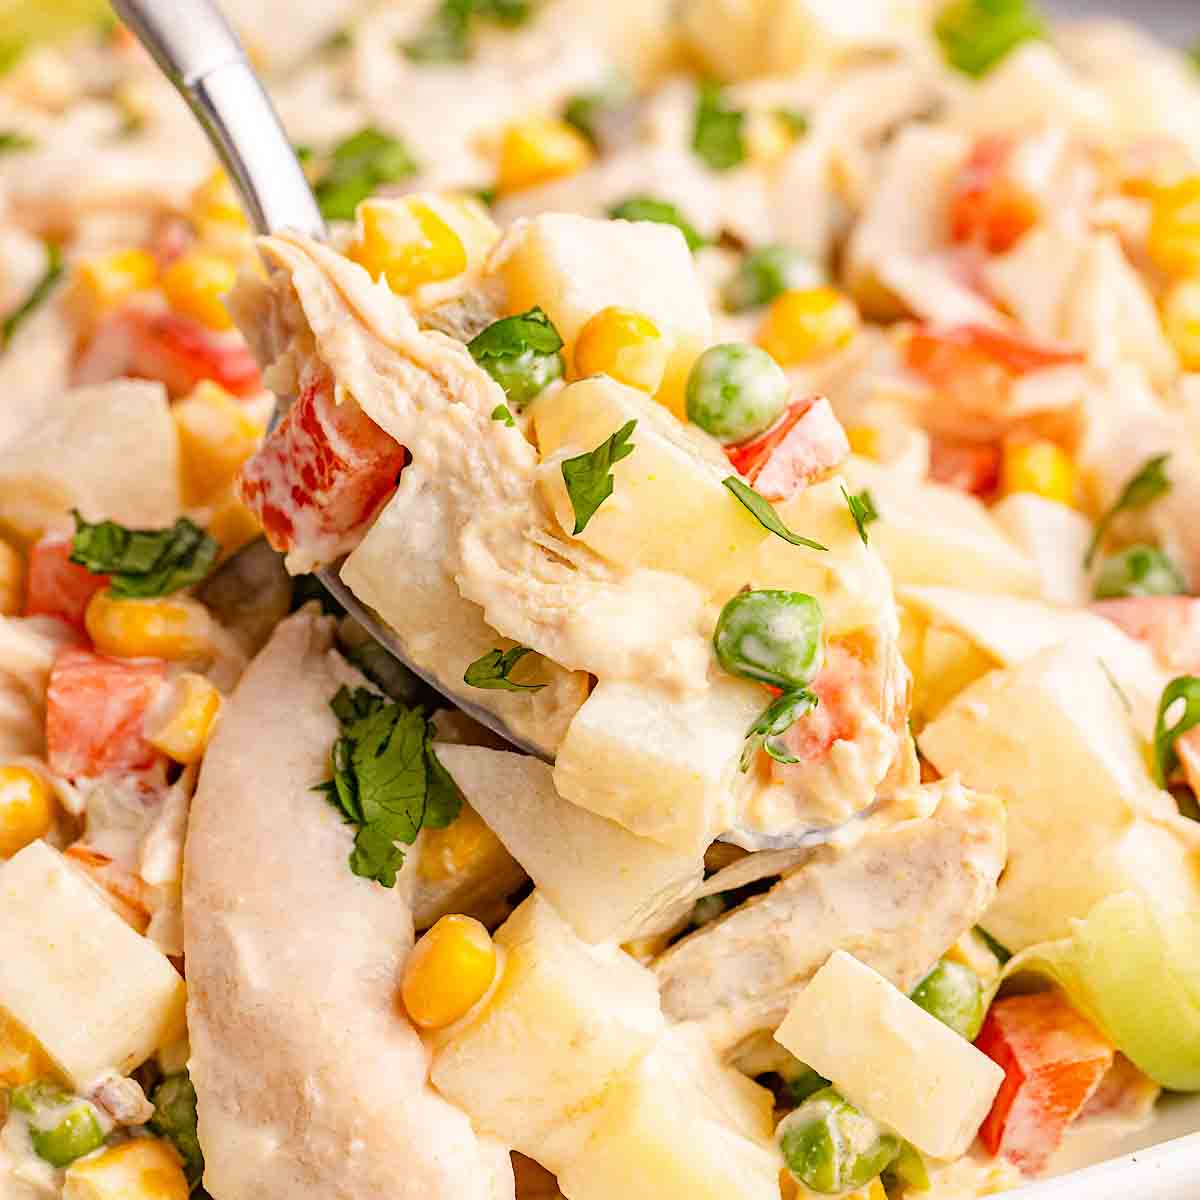 Mexican Chicken Salad (Ensalada de pollo) - Let’s Cook Chicken!